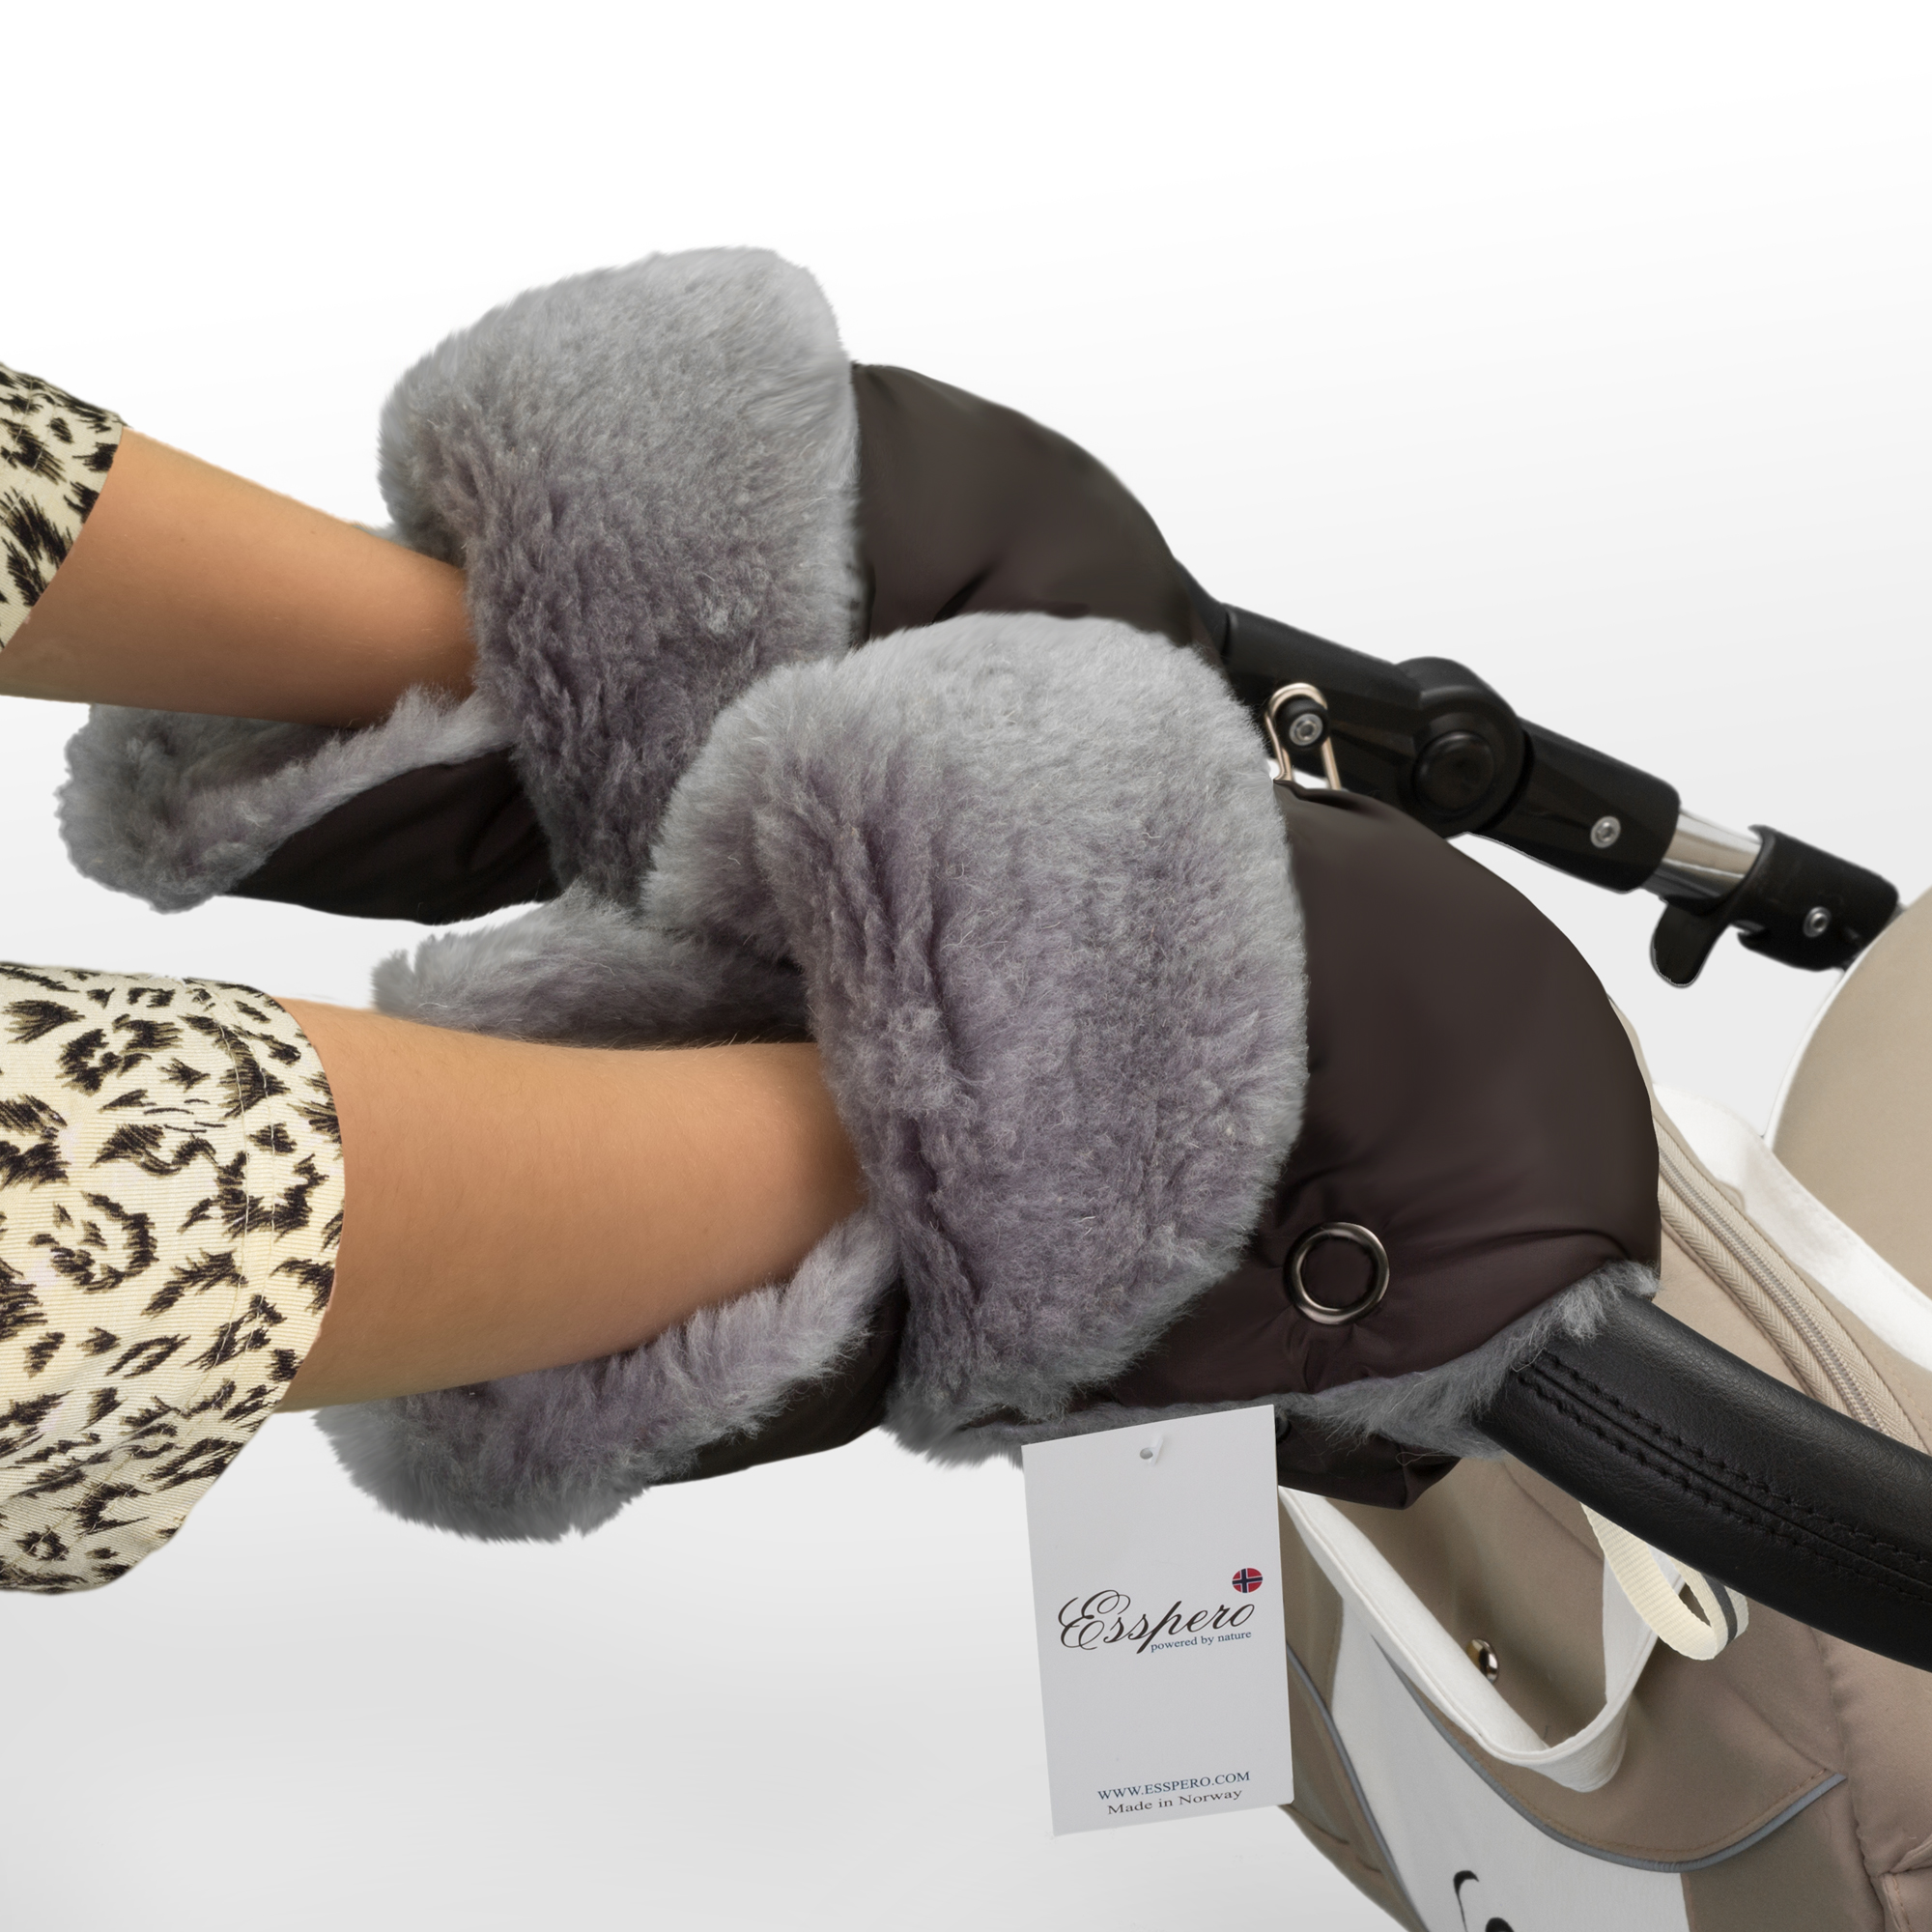 Муфта-рукавички для коляски Esspero Christoffer из натуральной шерсти. Фото N2